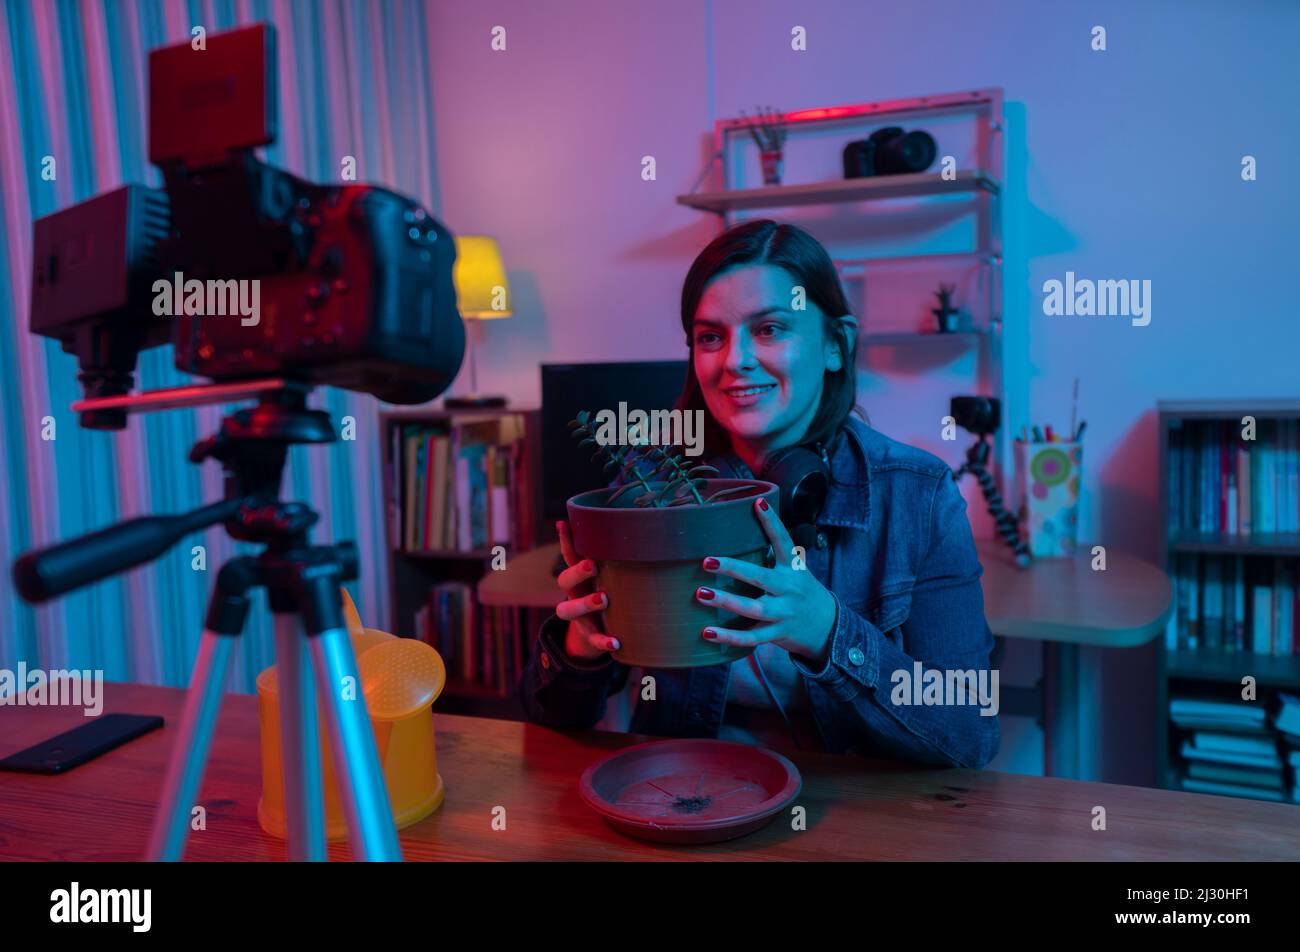 Belle femme hispanique devant une caméra vidéo enregistrant un blog dans son studio avec des lumières rouges et bleues à l'intérieur de sa maison. La diffusion de son jardini Banque D'Images